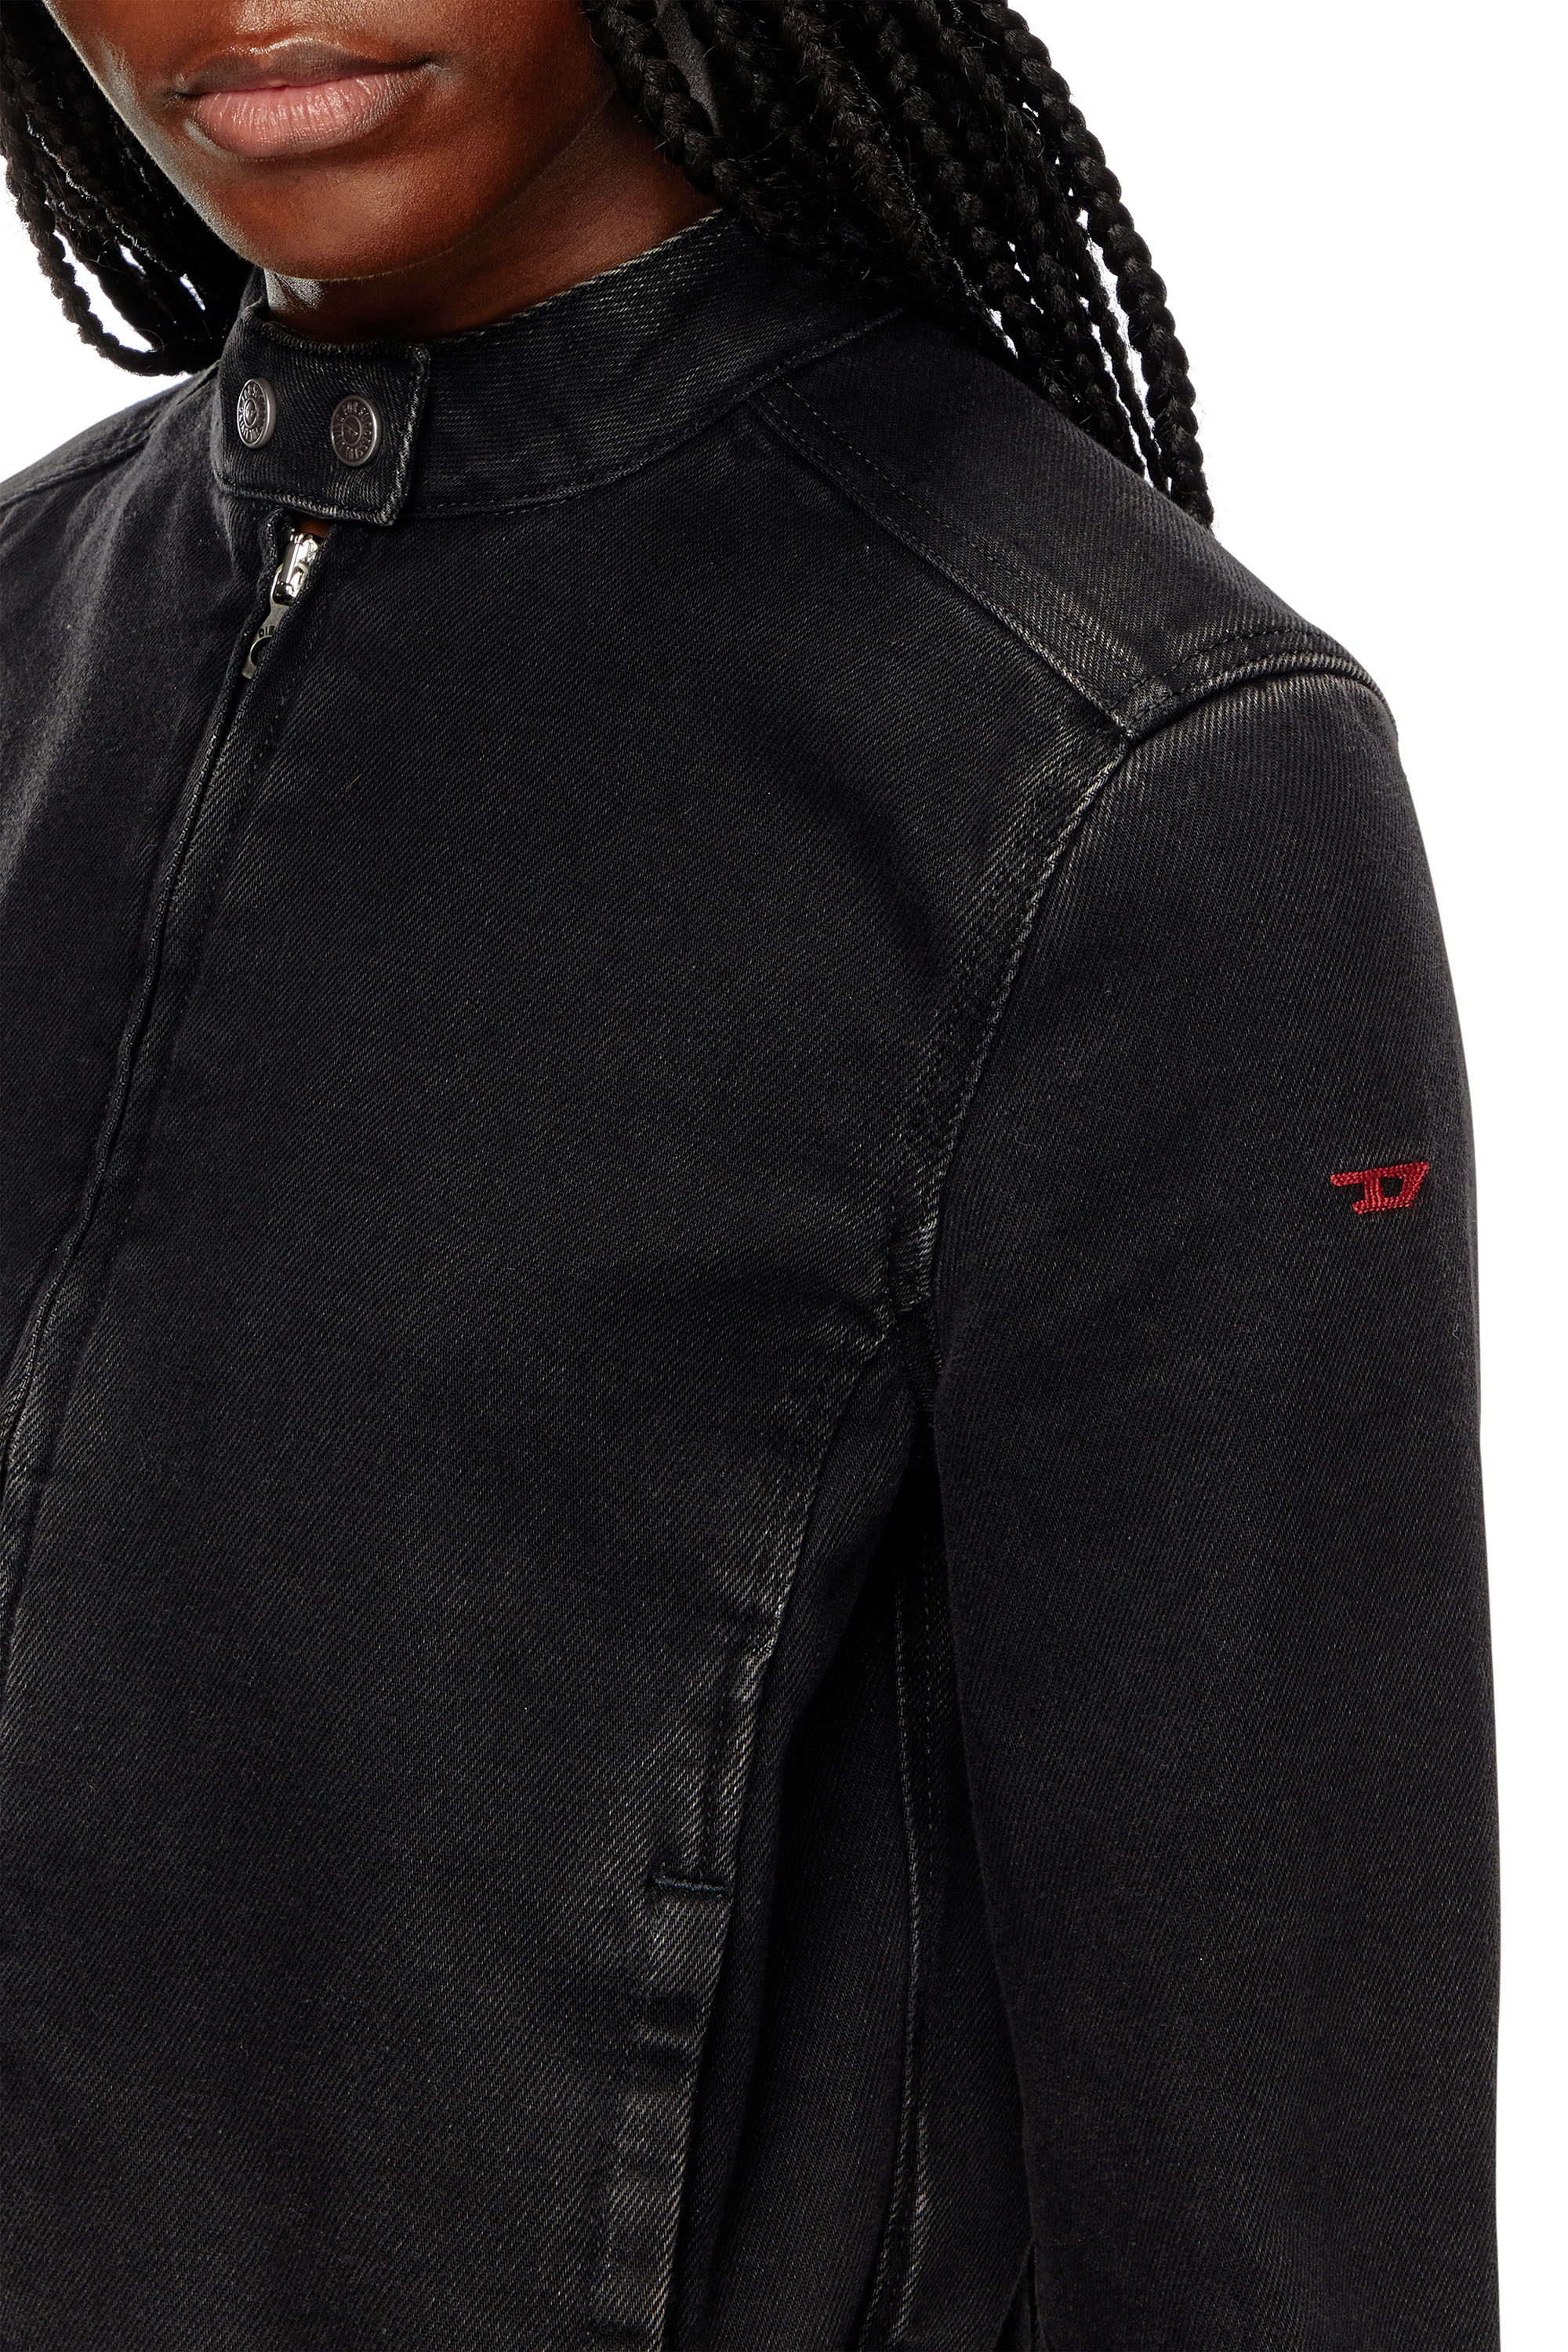 Diesel - DE-MORNIN, Woman Moto jacket in denim in Black - Image 4